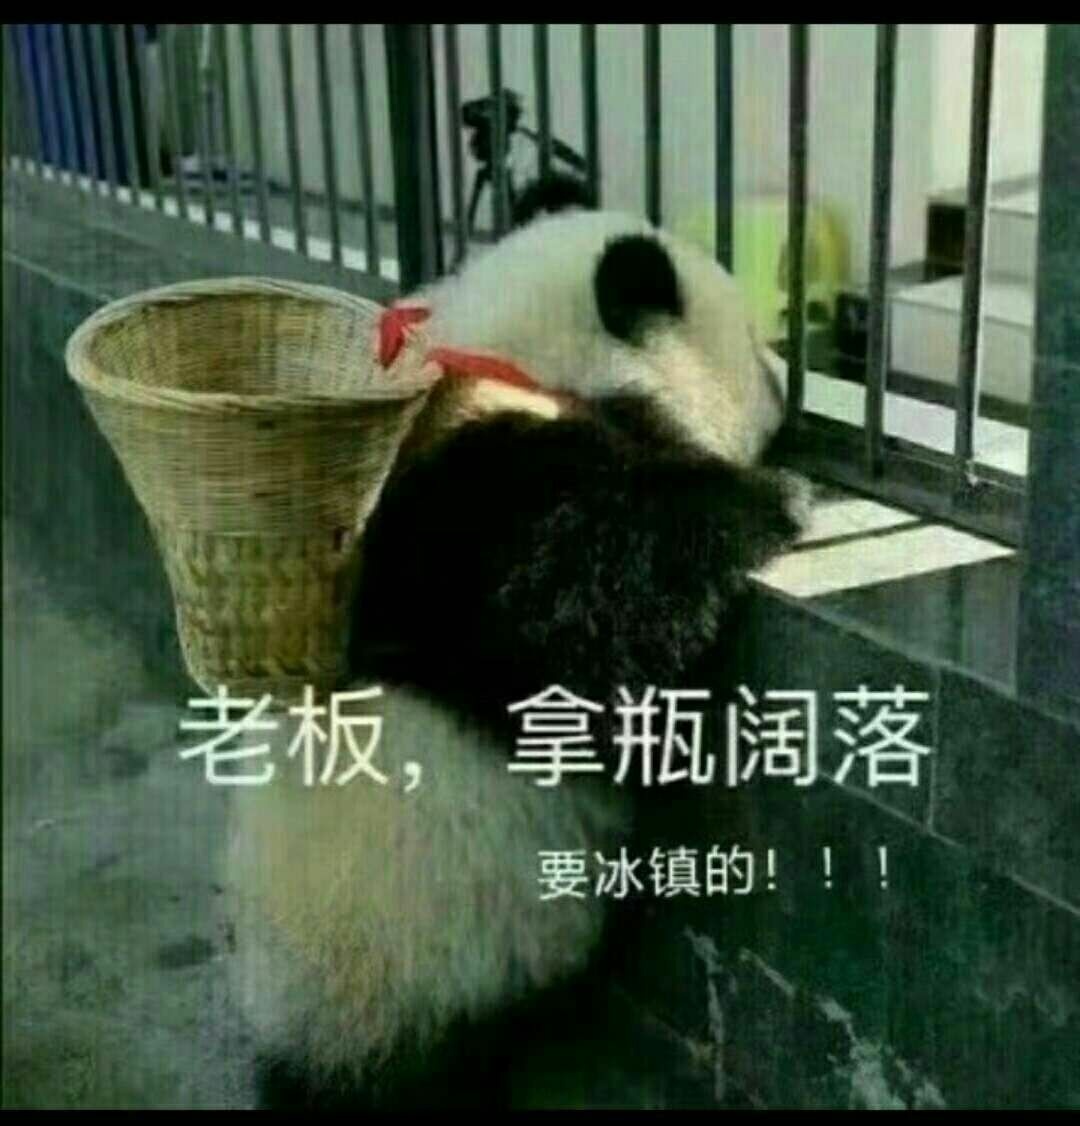 熊猫 可爱 呆萌 国宝 斗图 搞笑 老板，拿瓶可乐